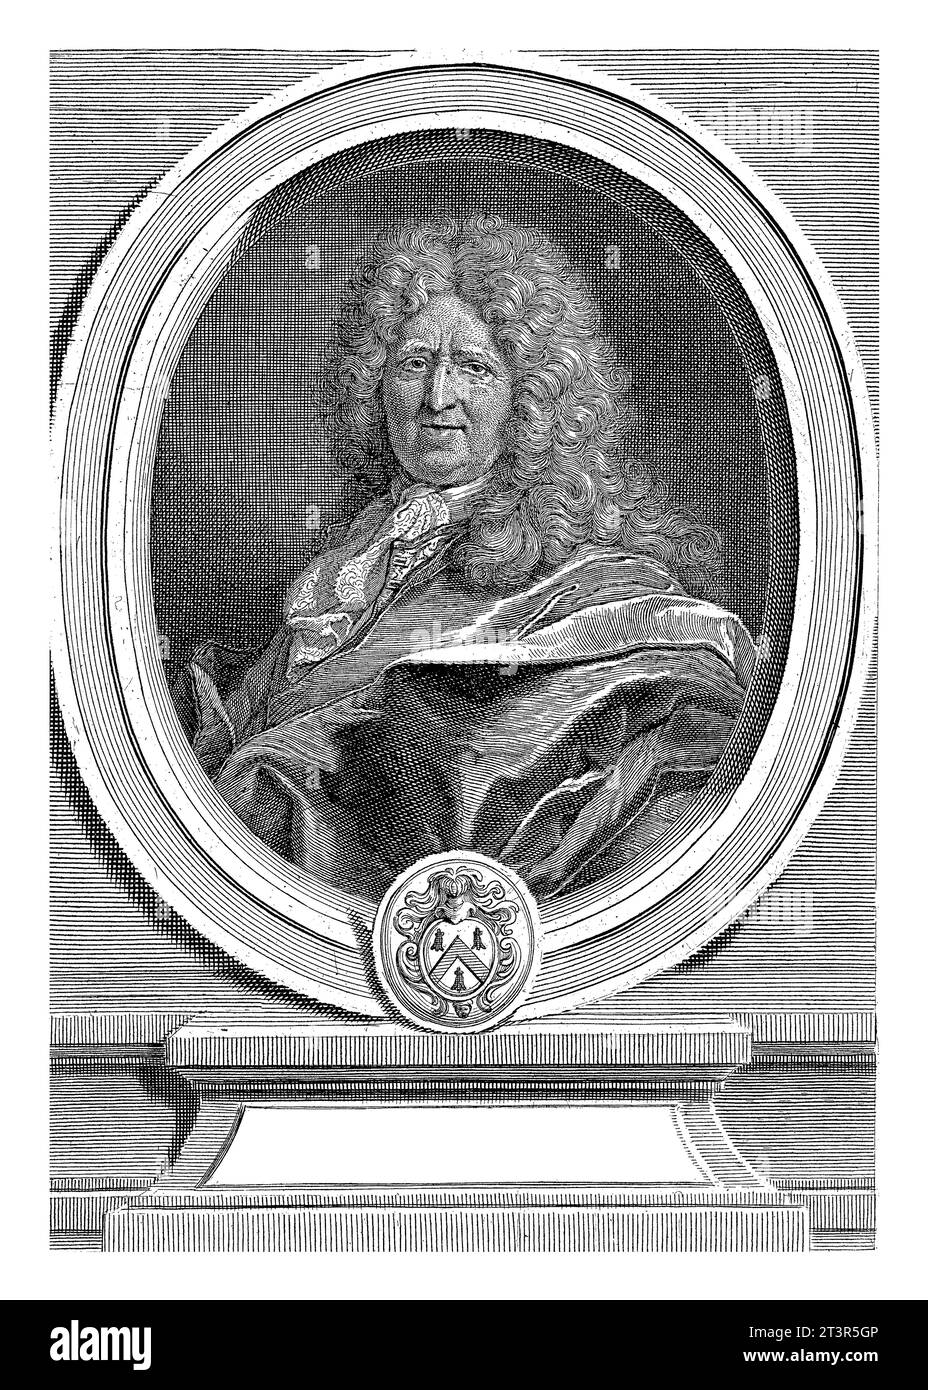 Ritratto di Jean Herault de Gourville, Gerard Edelinck, dopo Hyacinthe Rigaud, 1669 - 1707 Ritratto del diplomatico francese Jean Herault de Gourville Foto Stock